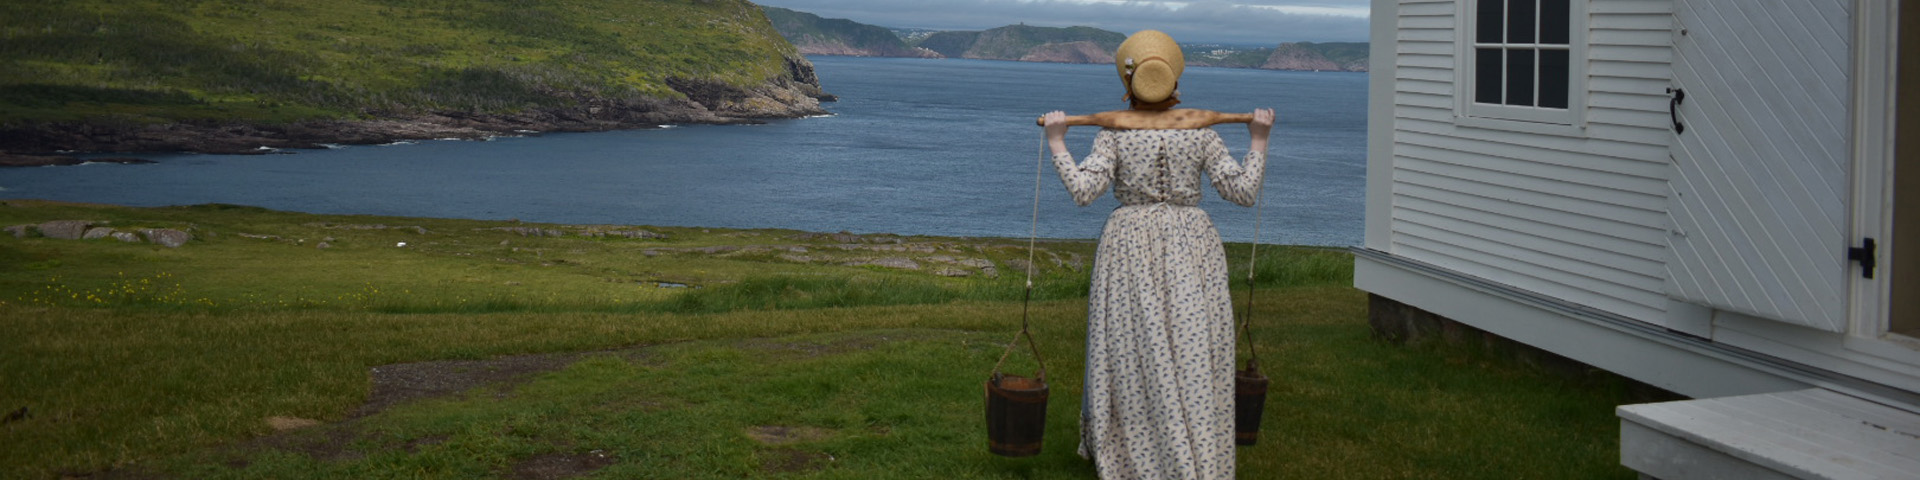 une femme en costume historique portant de l'eau regarde une vue de la côte près d'un phare